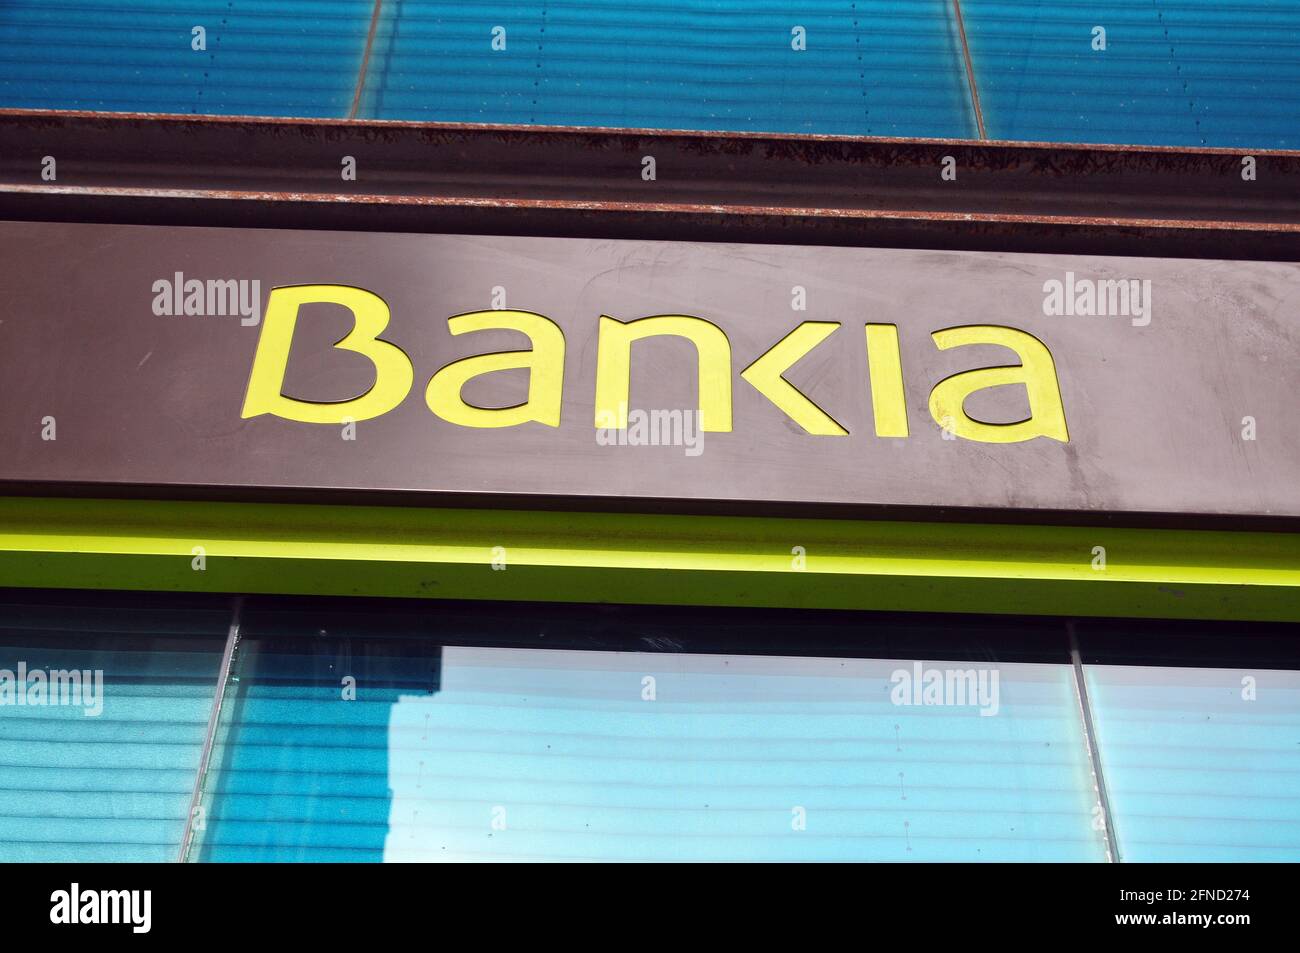 Qué es la fusión por absorción de Caixabank y Bankia